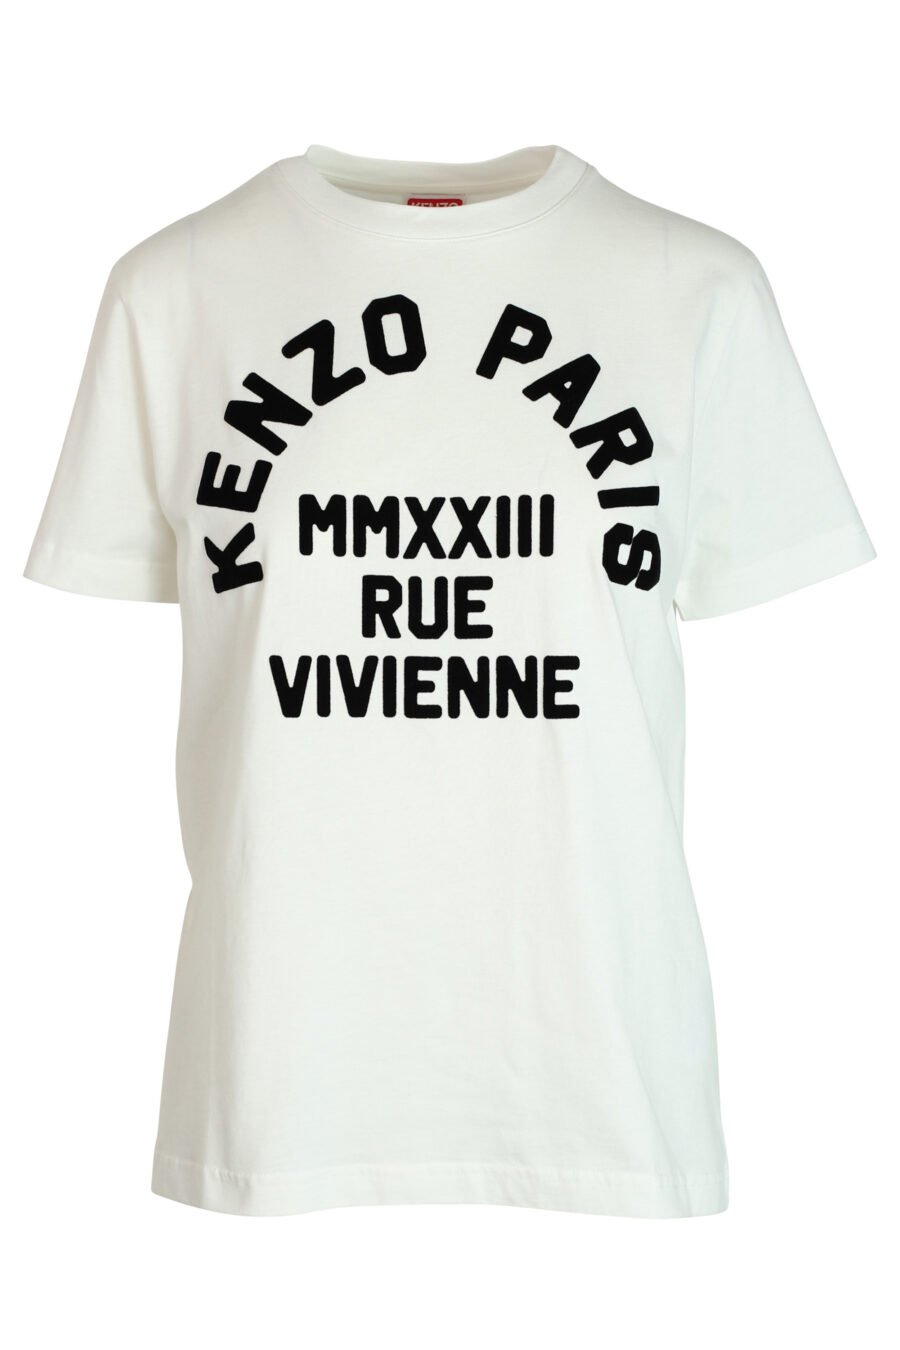 T-shirt branca com maxilogo preto "rue vivenne" - 3612230461161